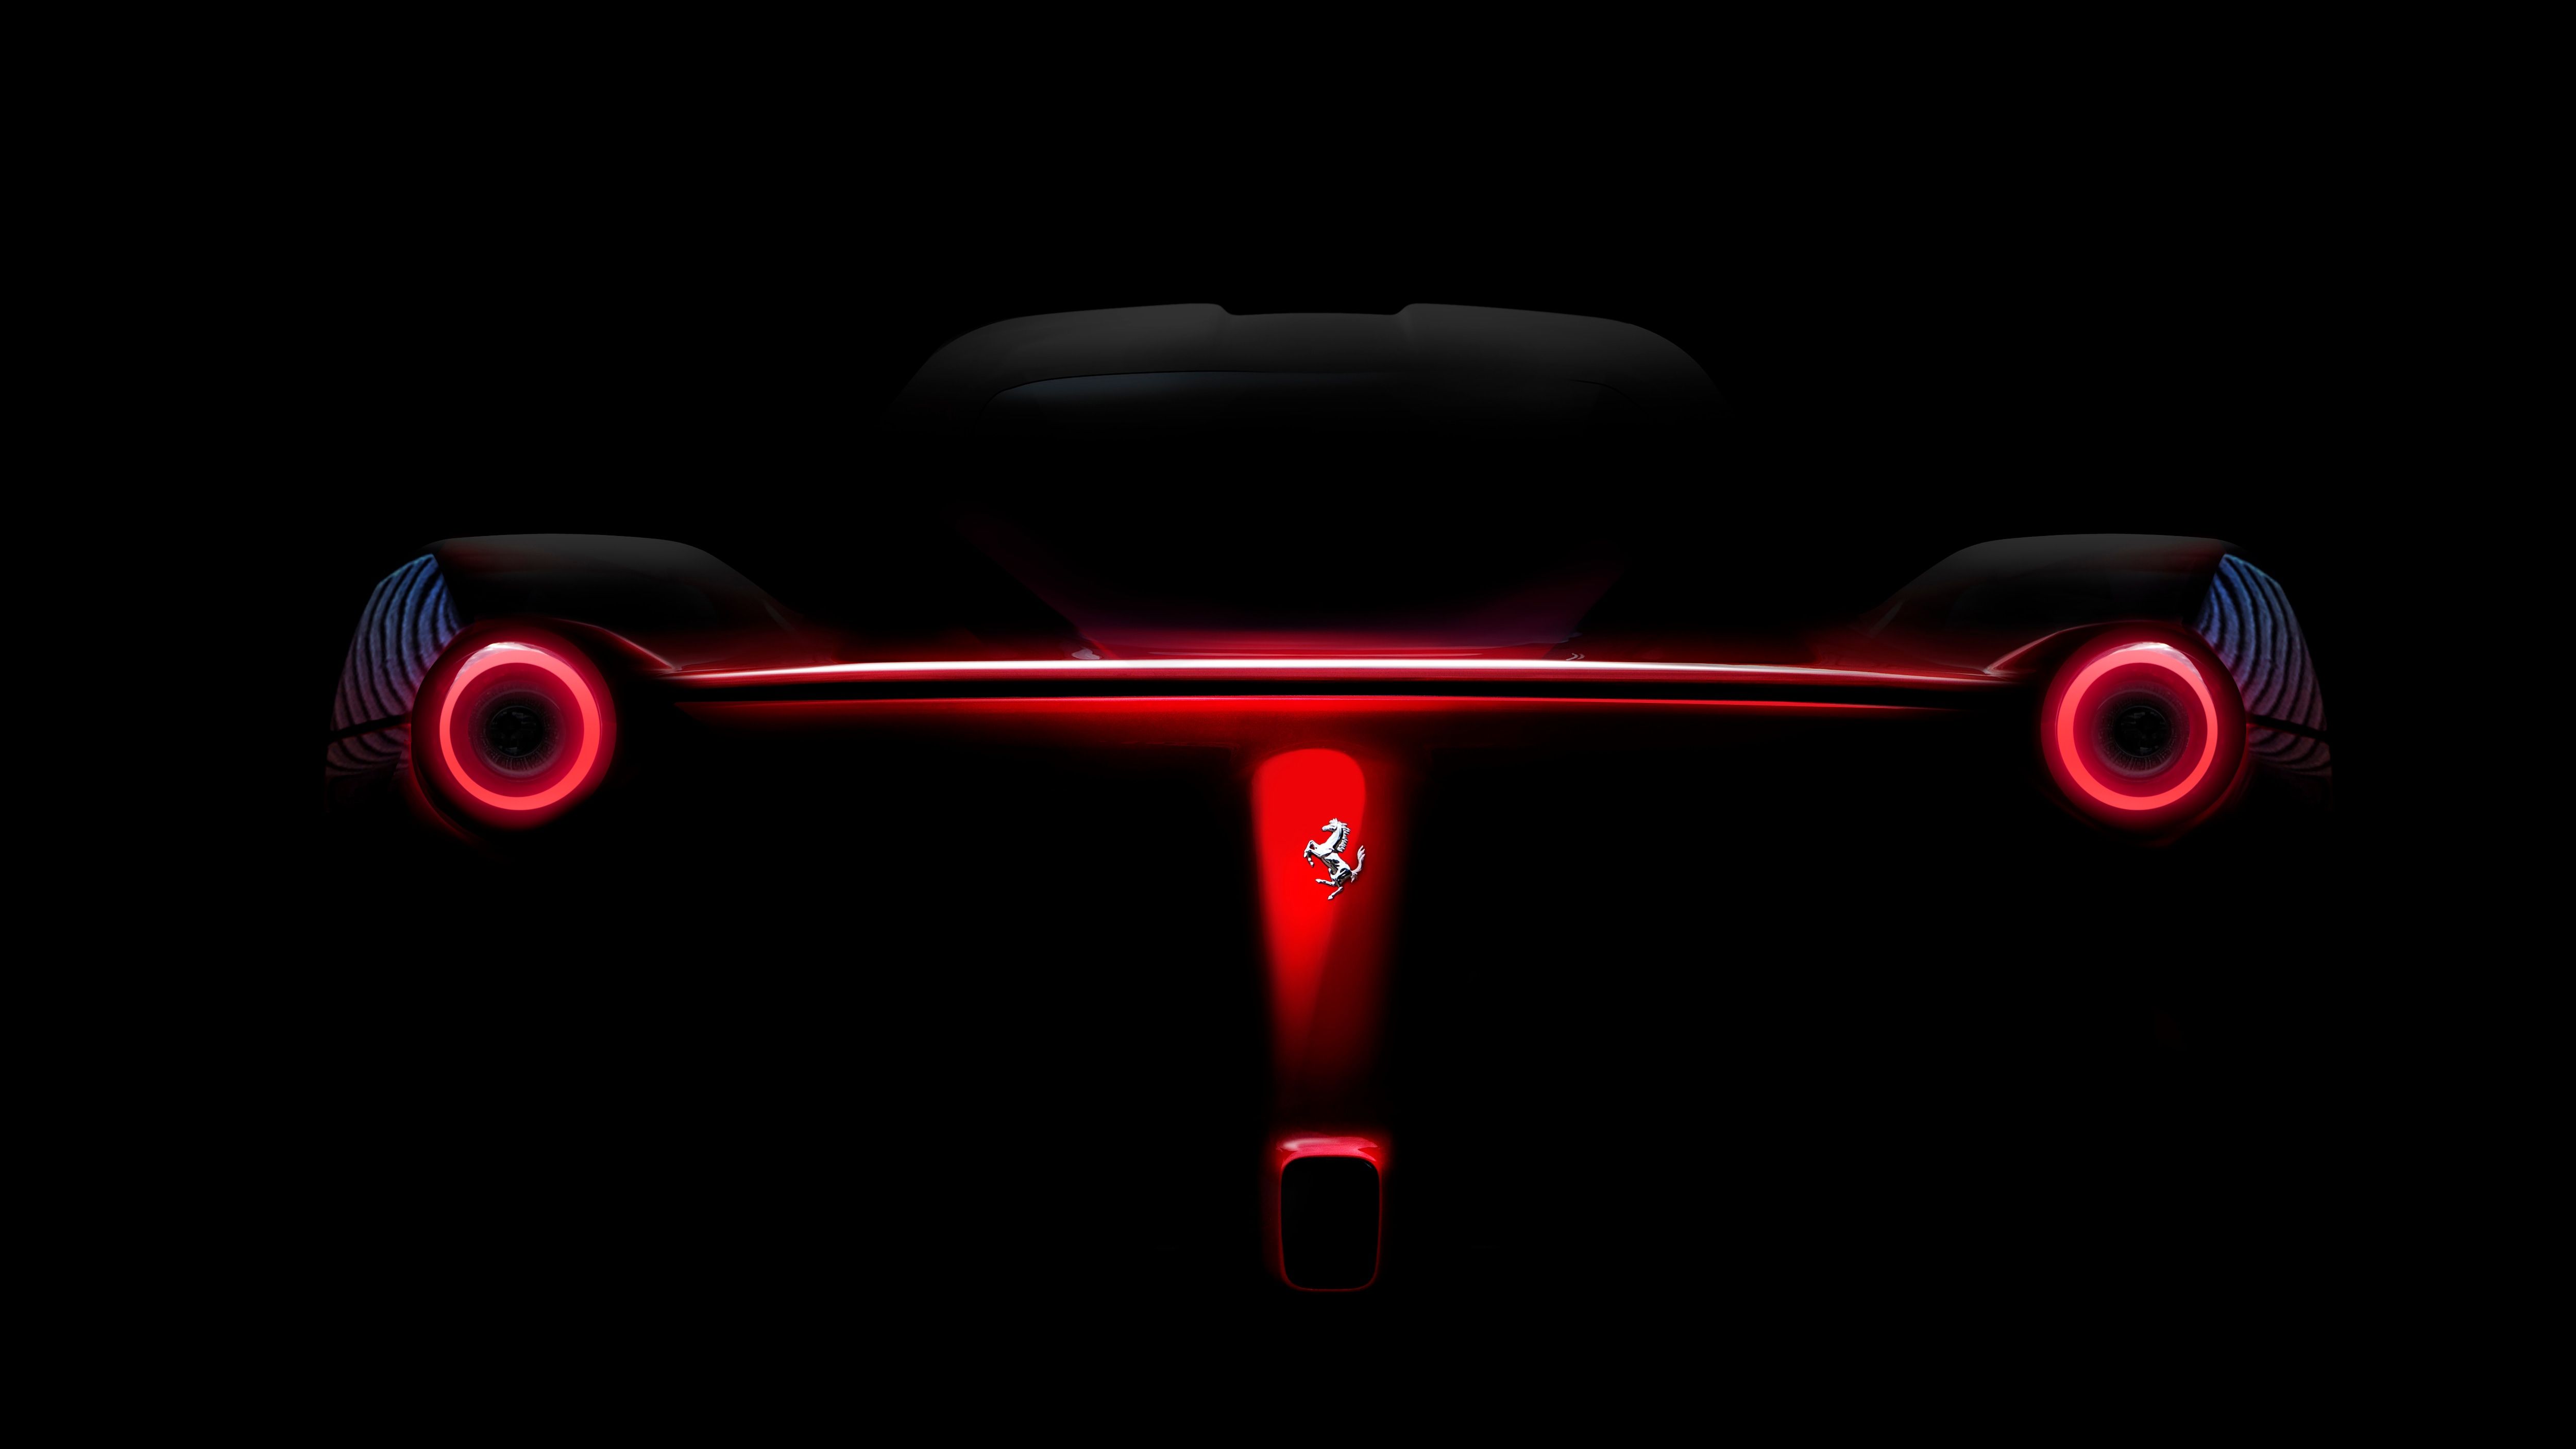 Luces traseras La Ferrari 4k, HD Cars, fondos de pantalla 4k, imágenes